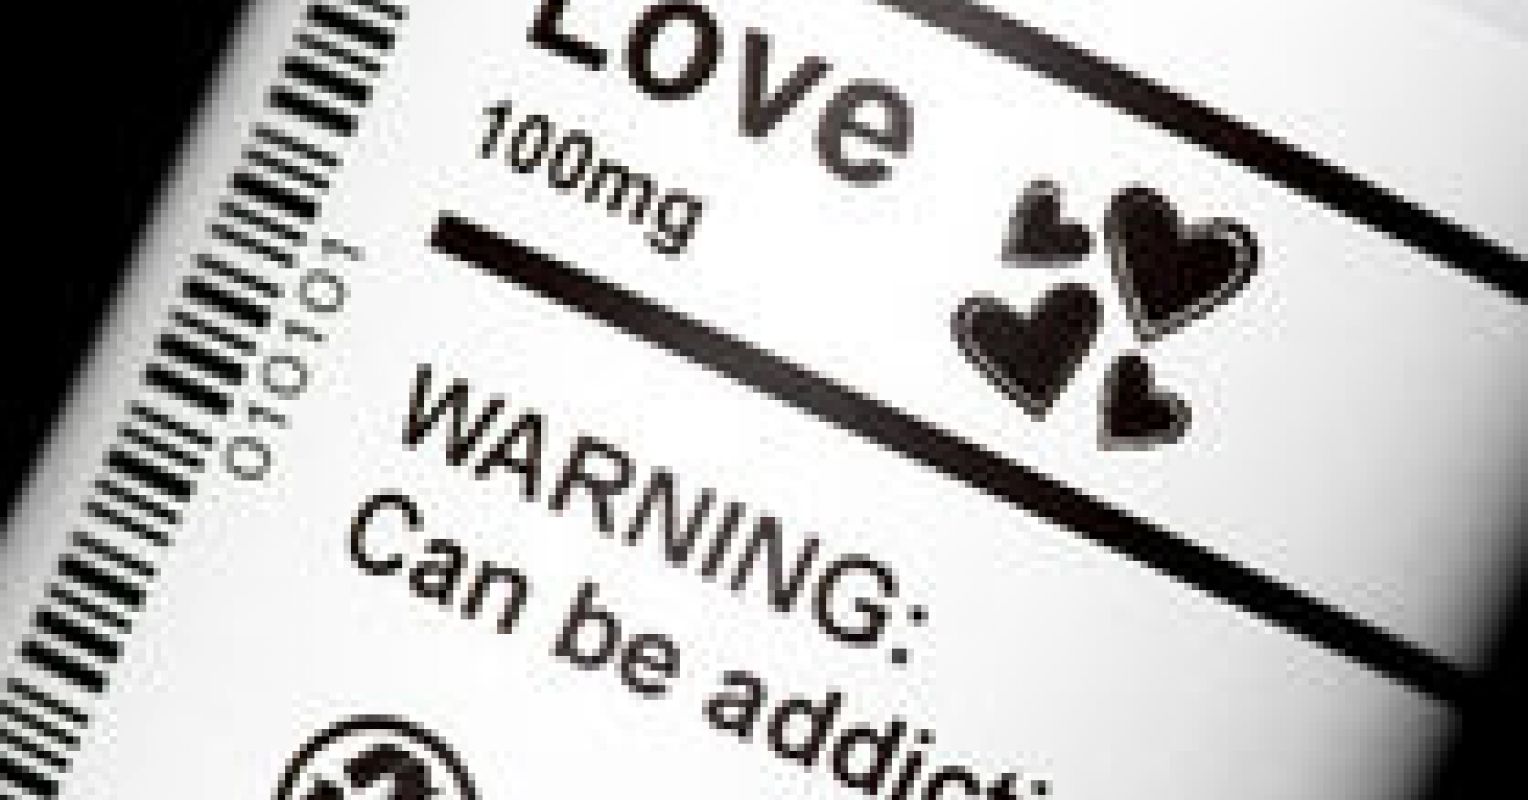 Is Love an Addiction?